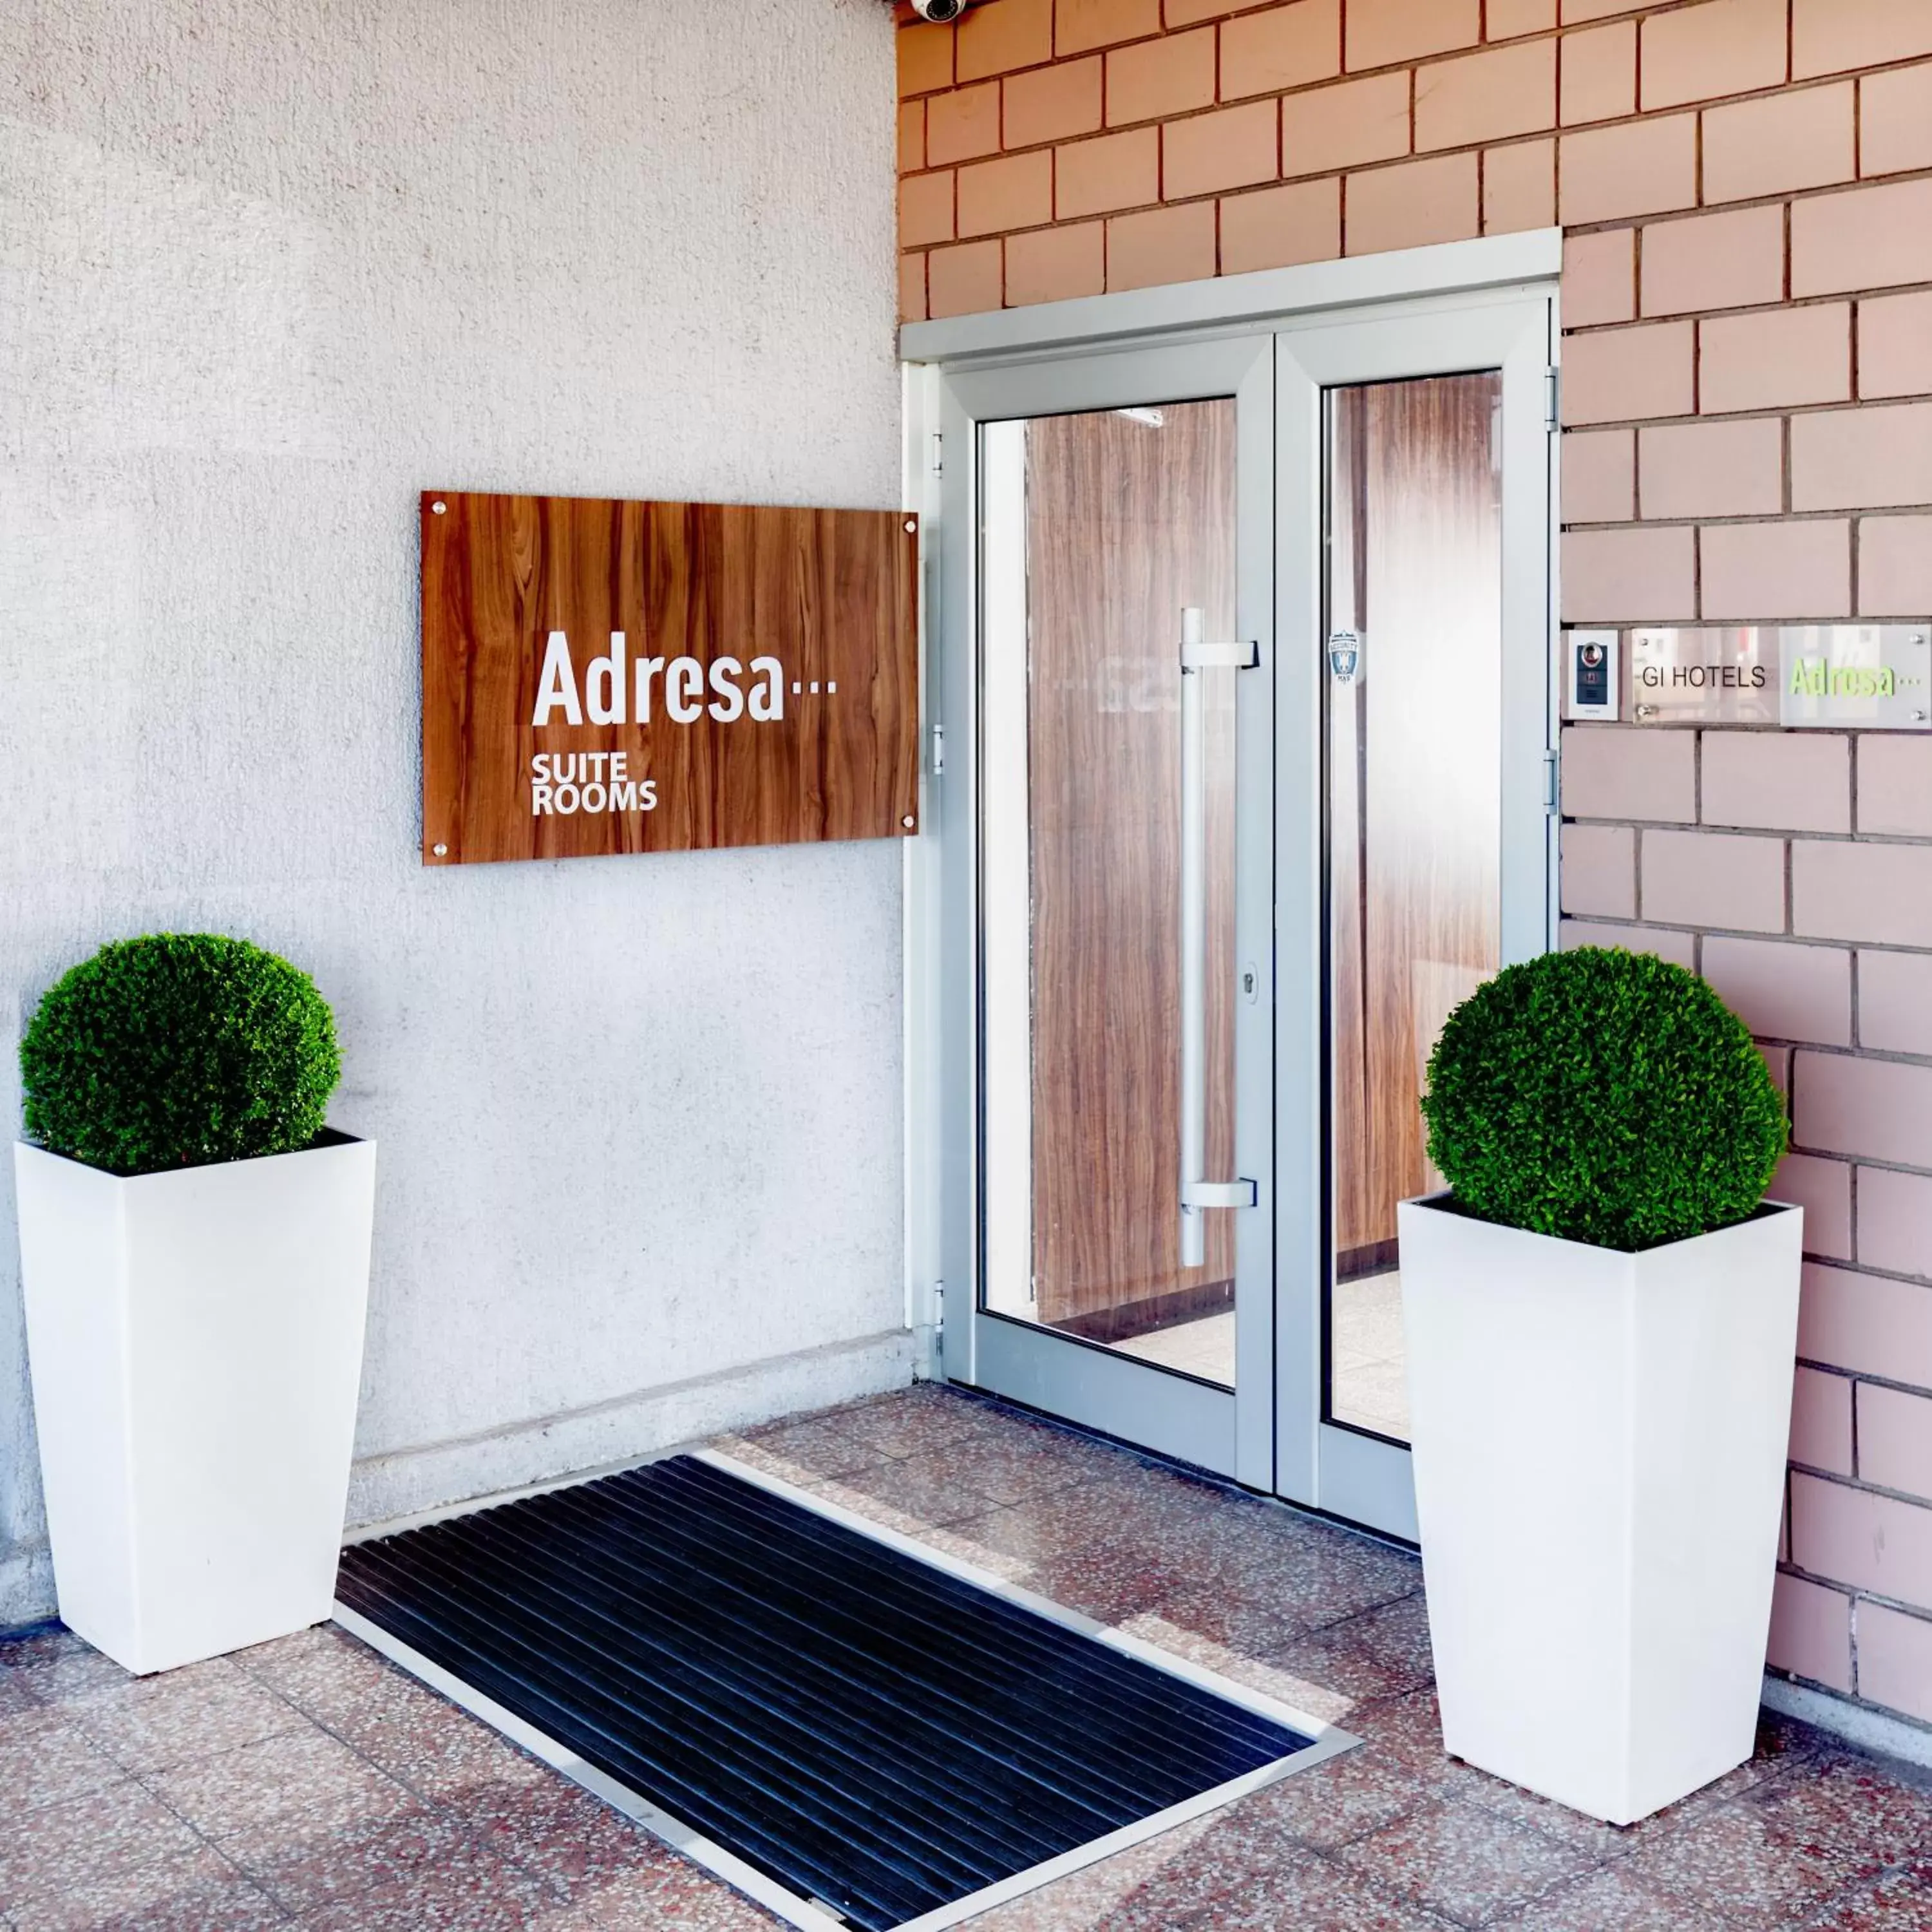 Facade/entrance in Adresa Suites